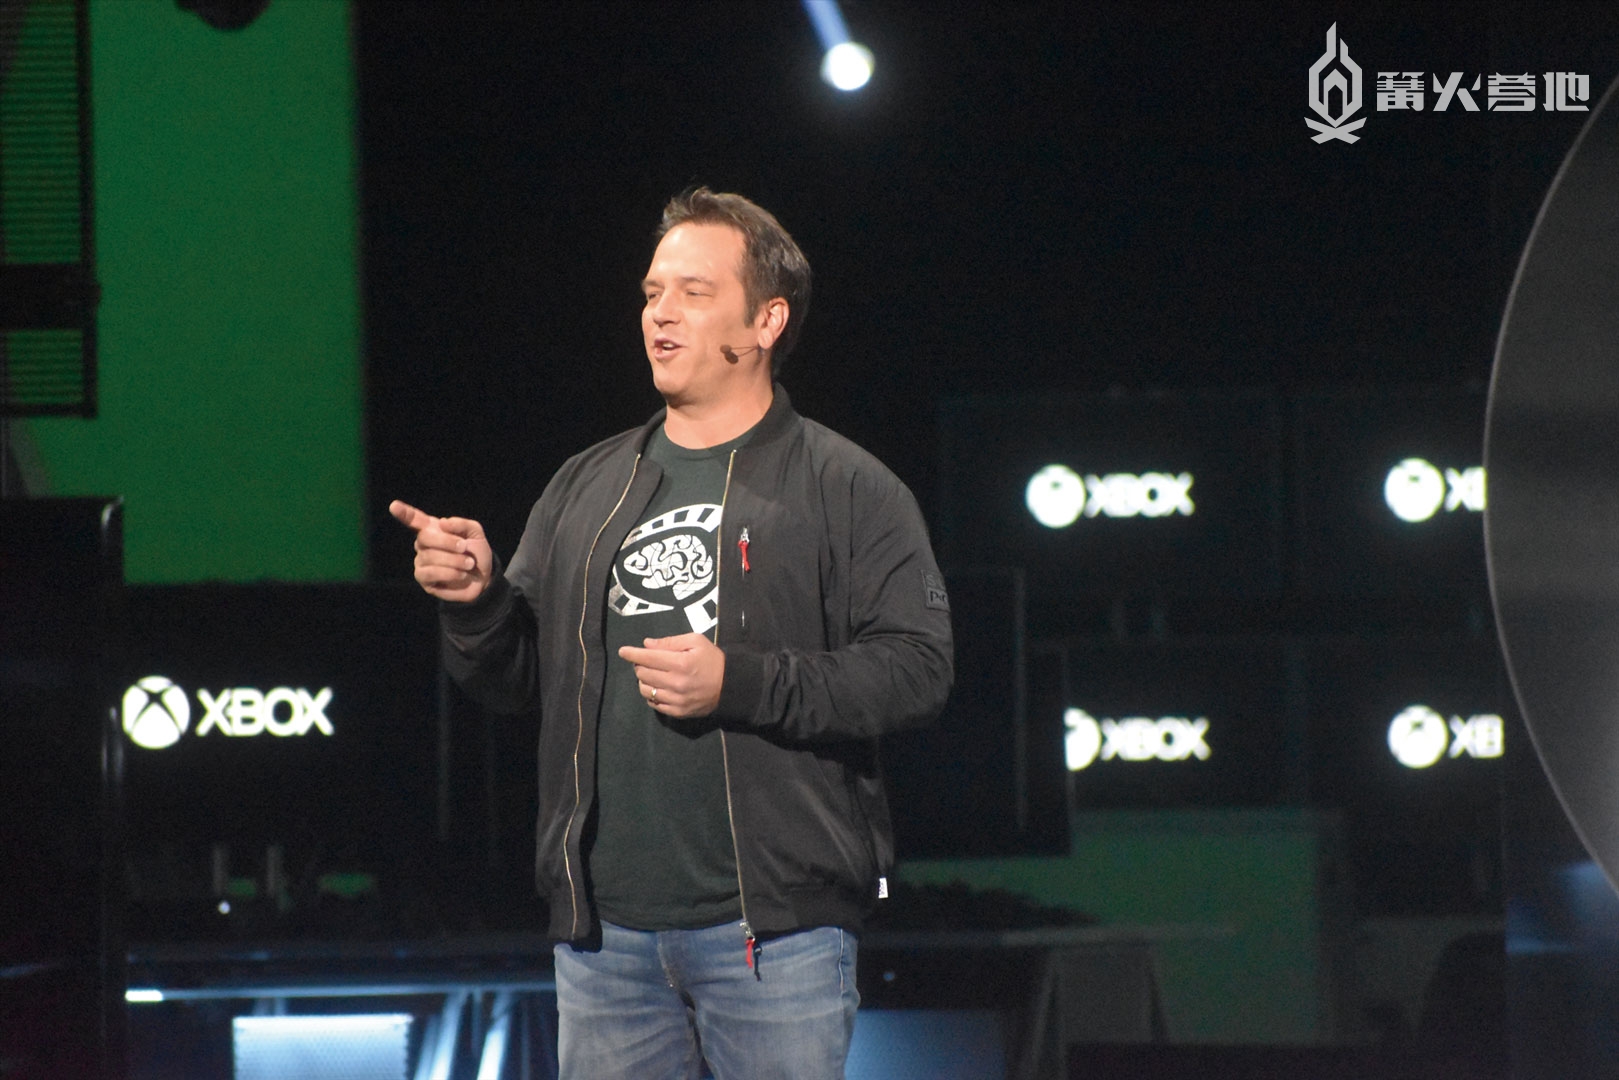 在 E3 2019 发布会上首次公开全新硬件的 Xbox 部门负责人菲尔·斯宾塞